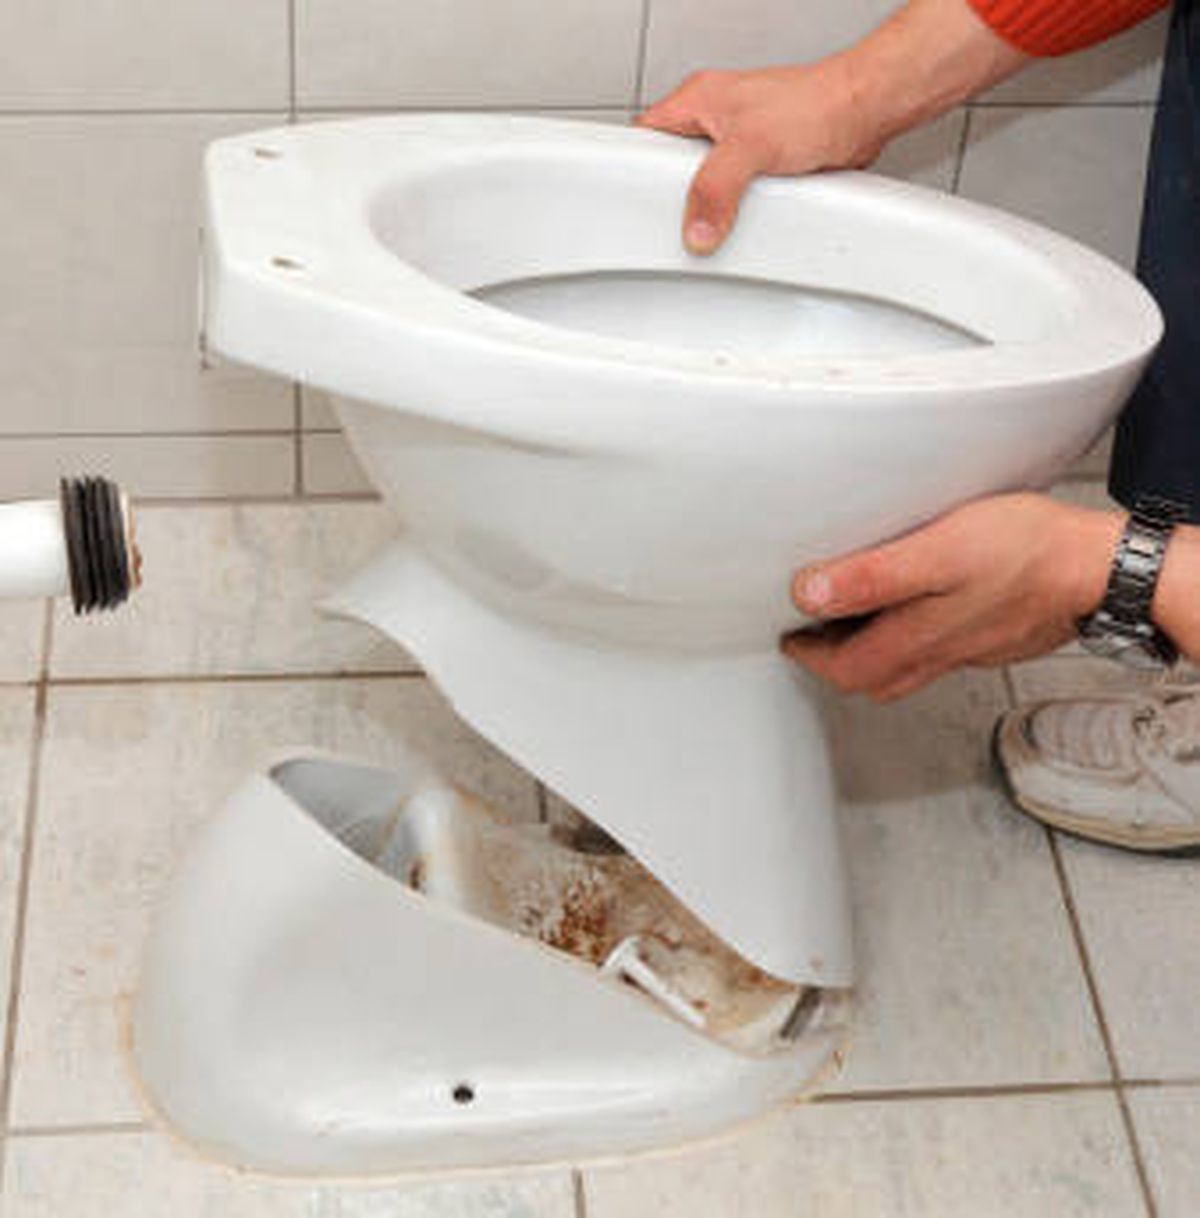 Toilet goyang dapat menyebabkan kebocoran air